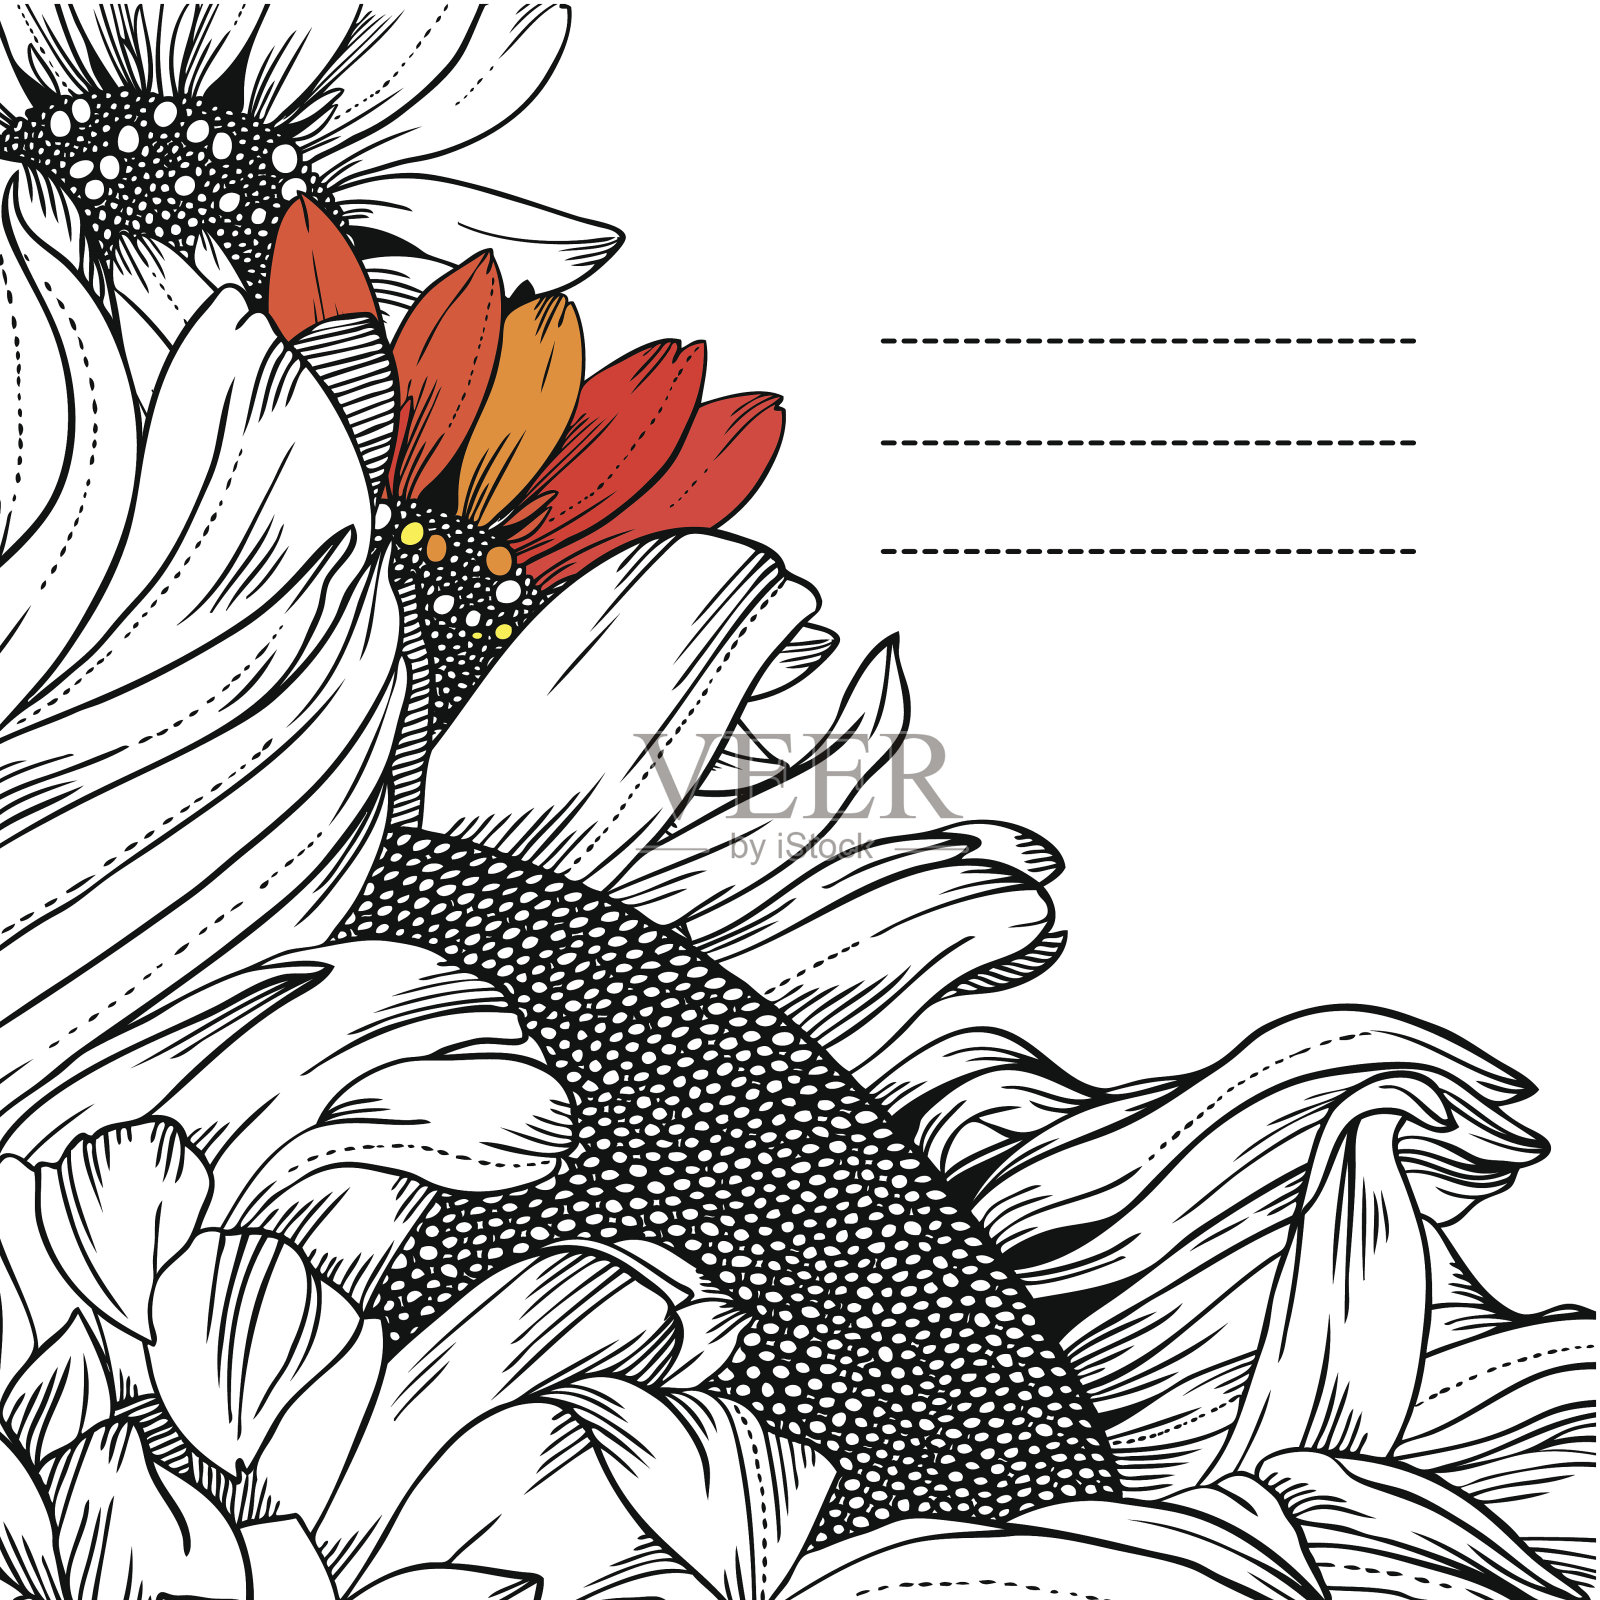 黑白向日葵的框架插画图片素材